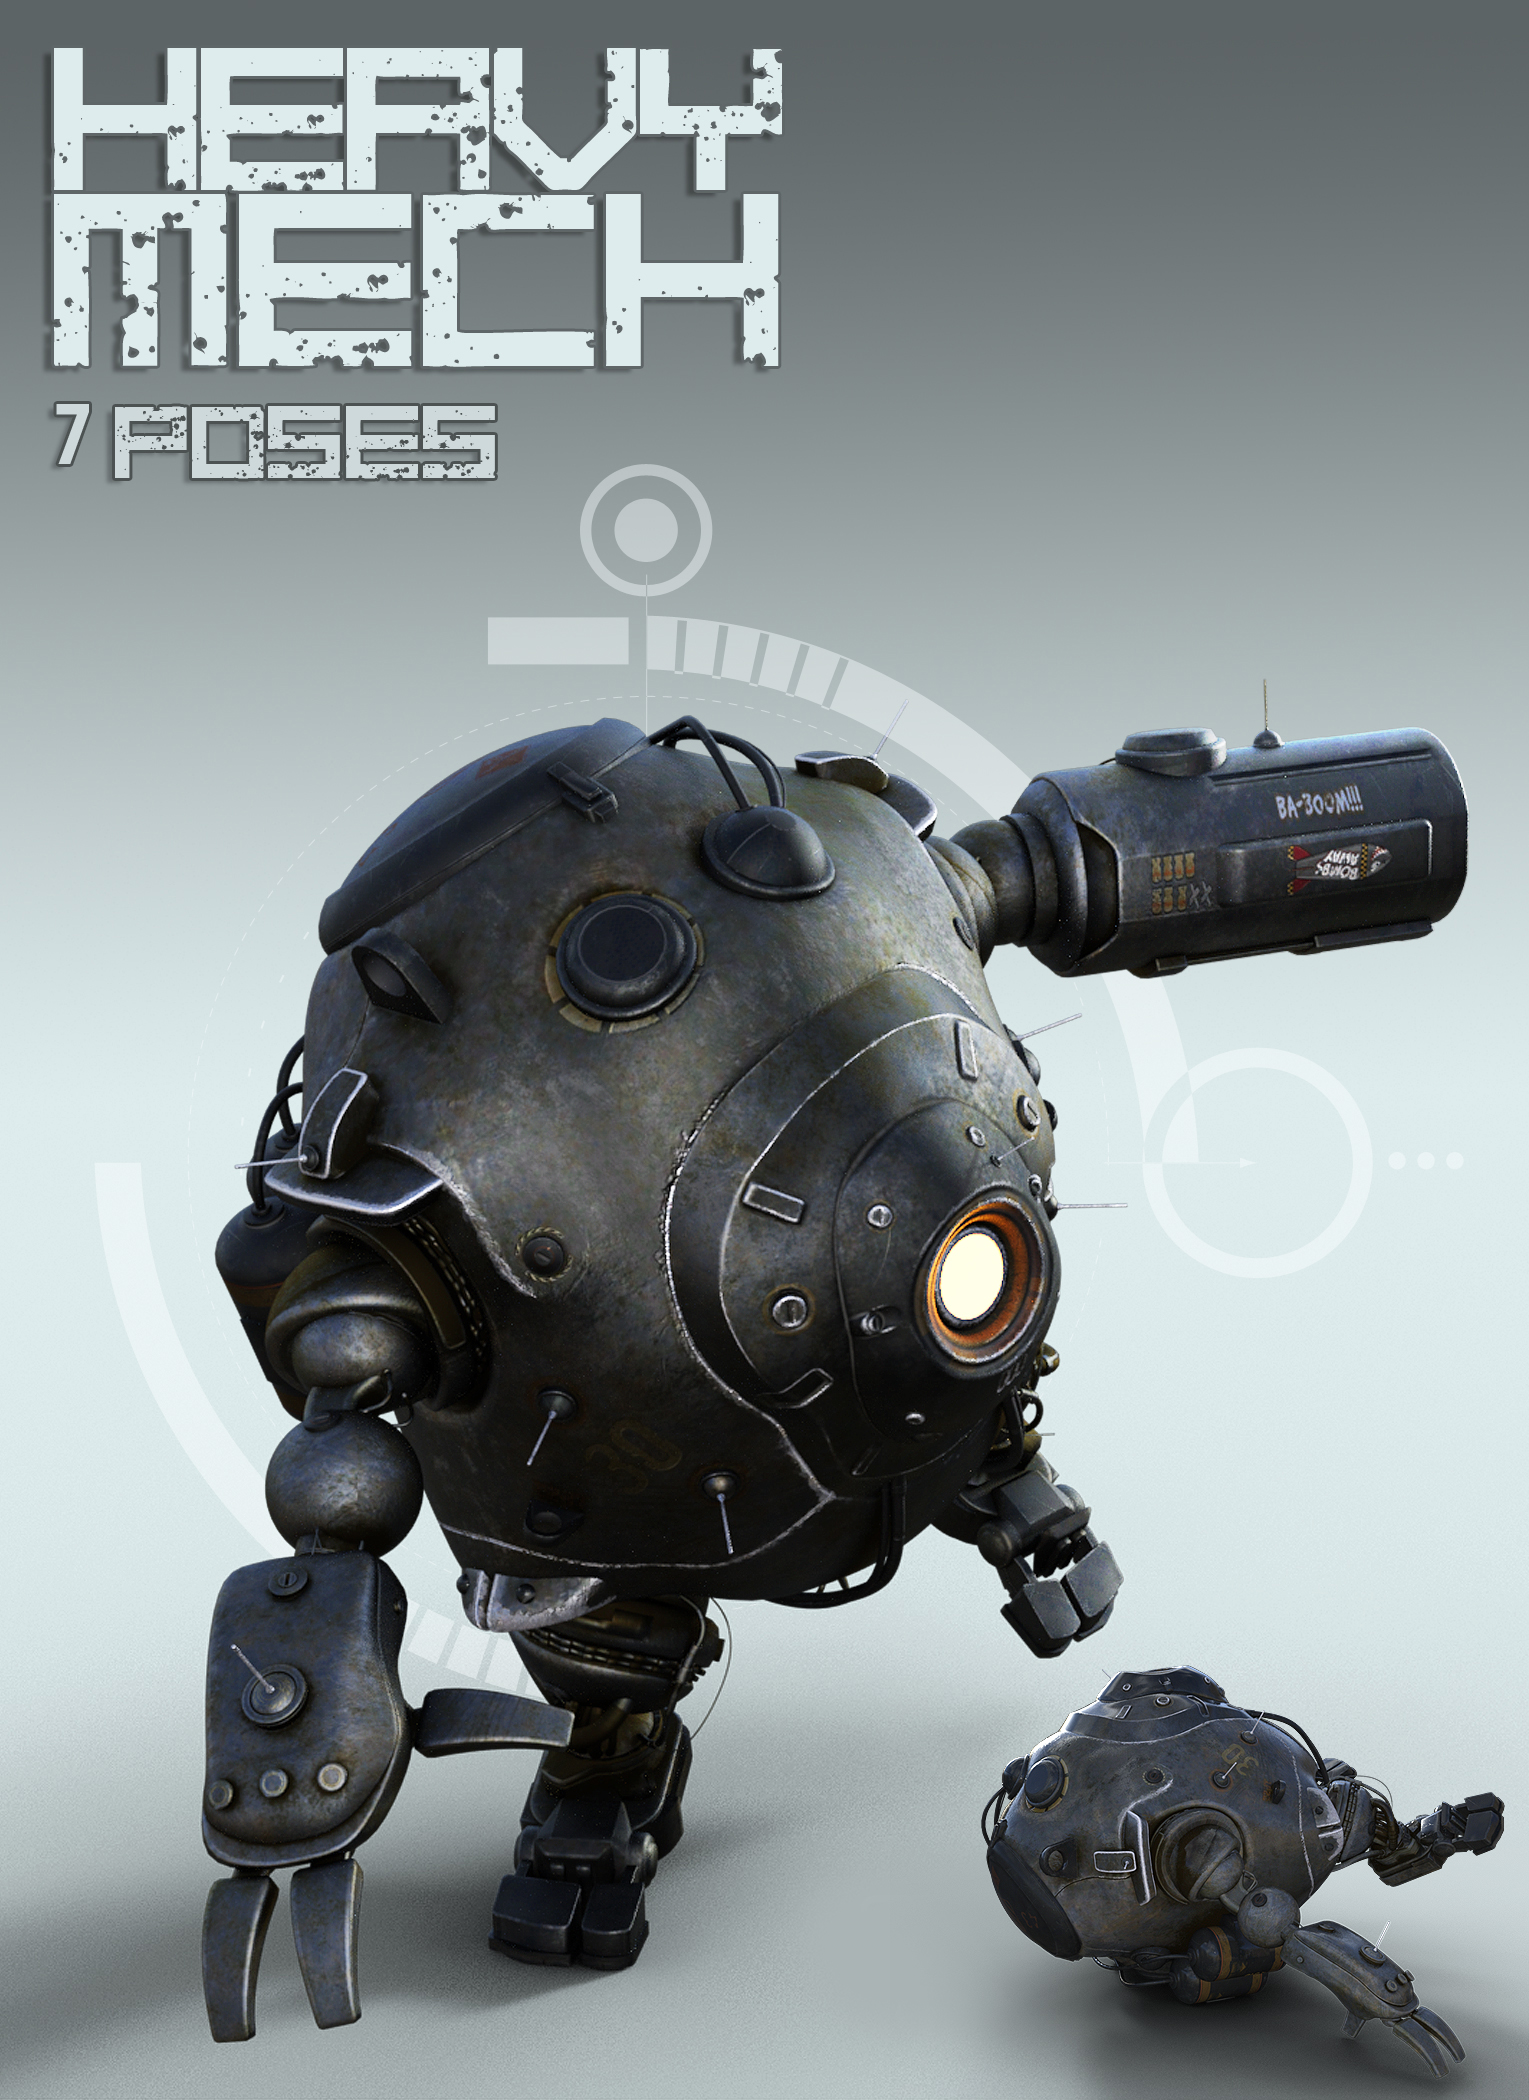 Heavy Mech by: The AntFarm, 3D Models by Daz 3D